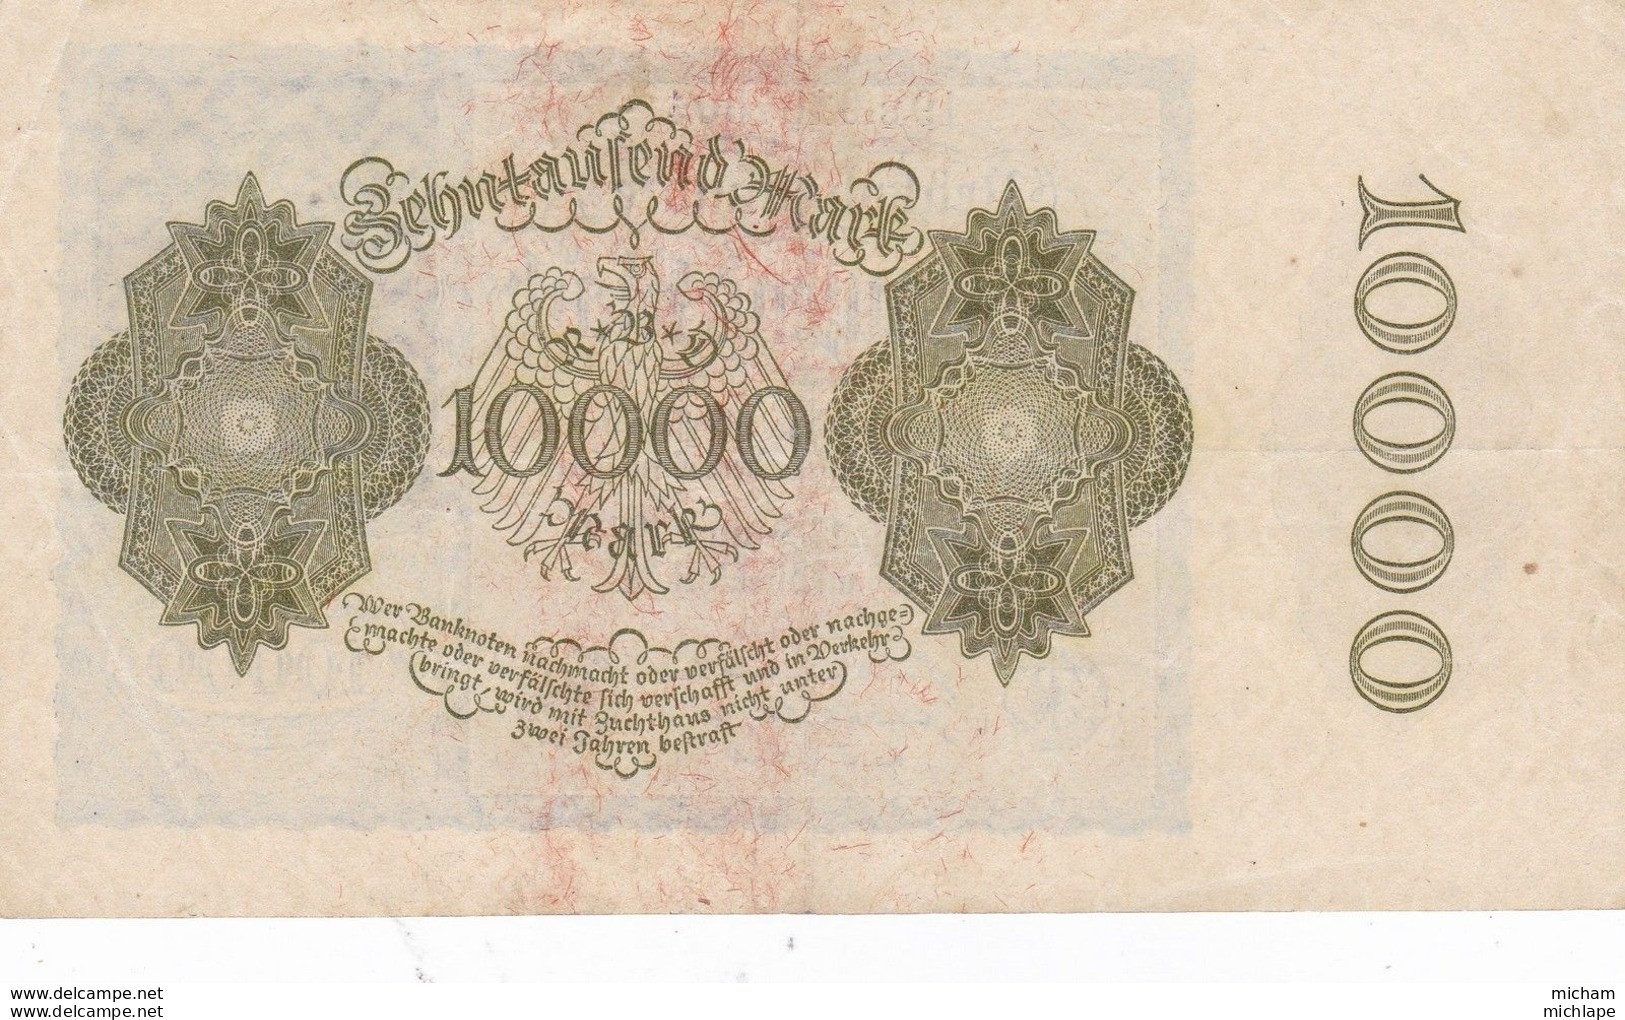 Allemagne 10000  Marks  1922  Ce Billet A Circulé - A Identificar